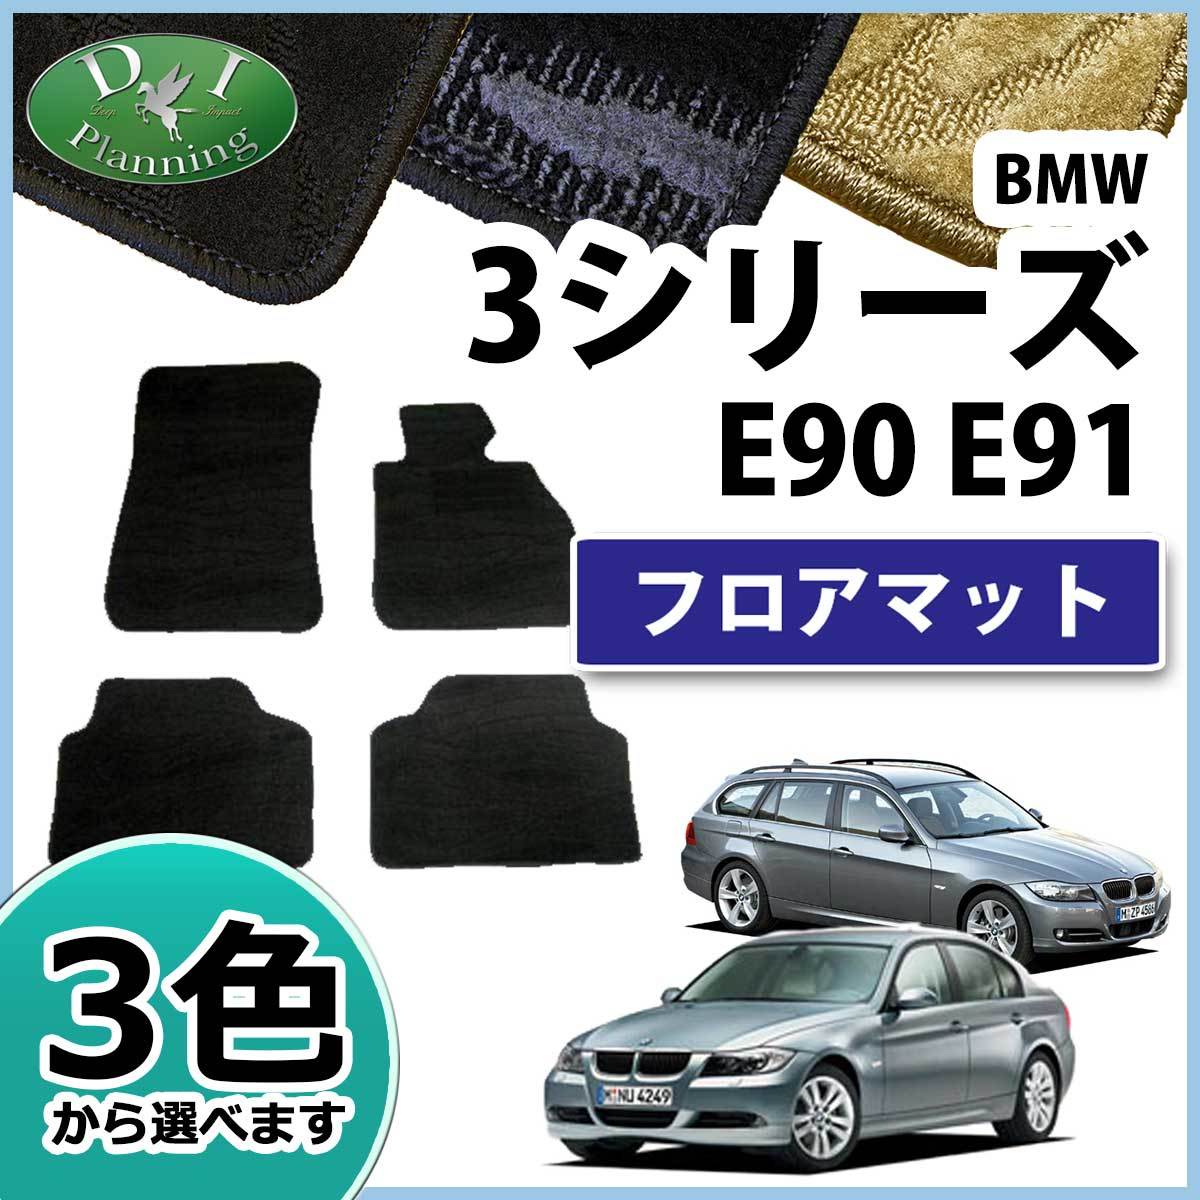 BMW 3シリーズ E90 E91 フロアマット カーマット 織柄 社外新品 フロアシートカバー フロアカーペット 自動車マット_画像1